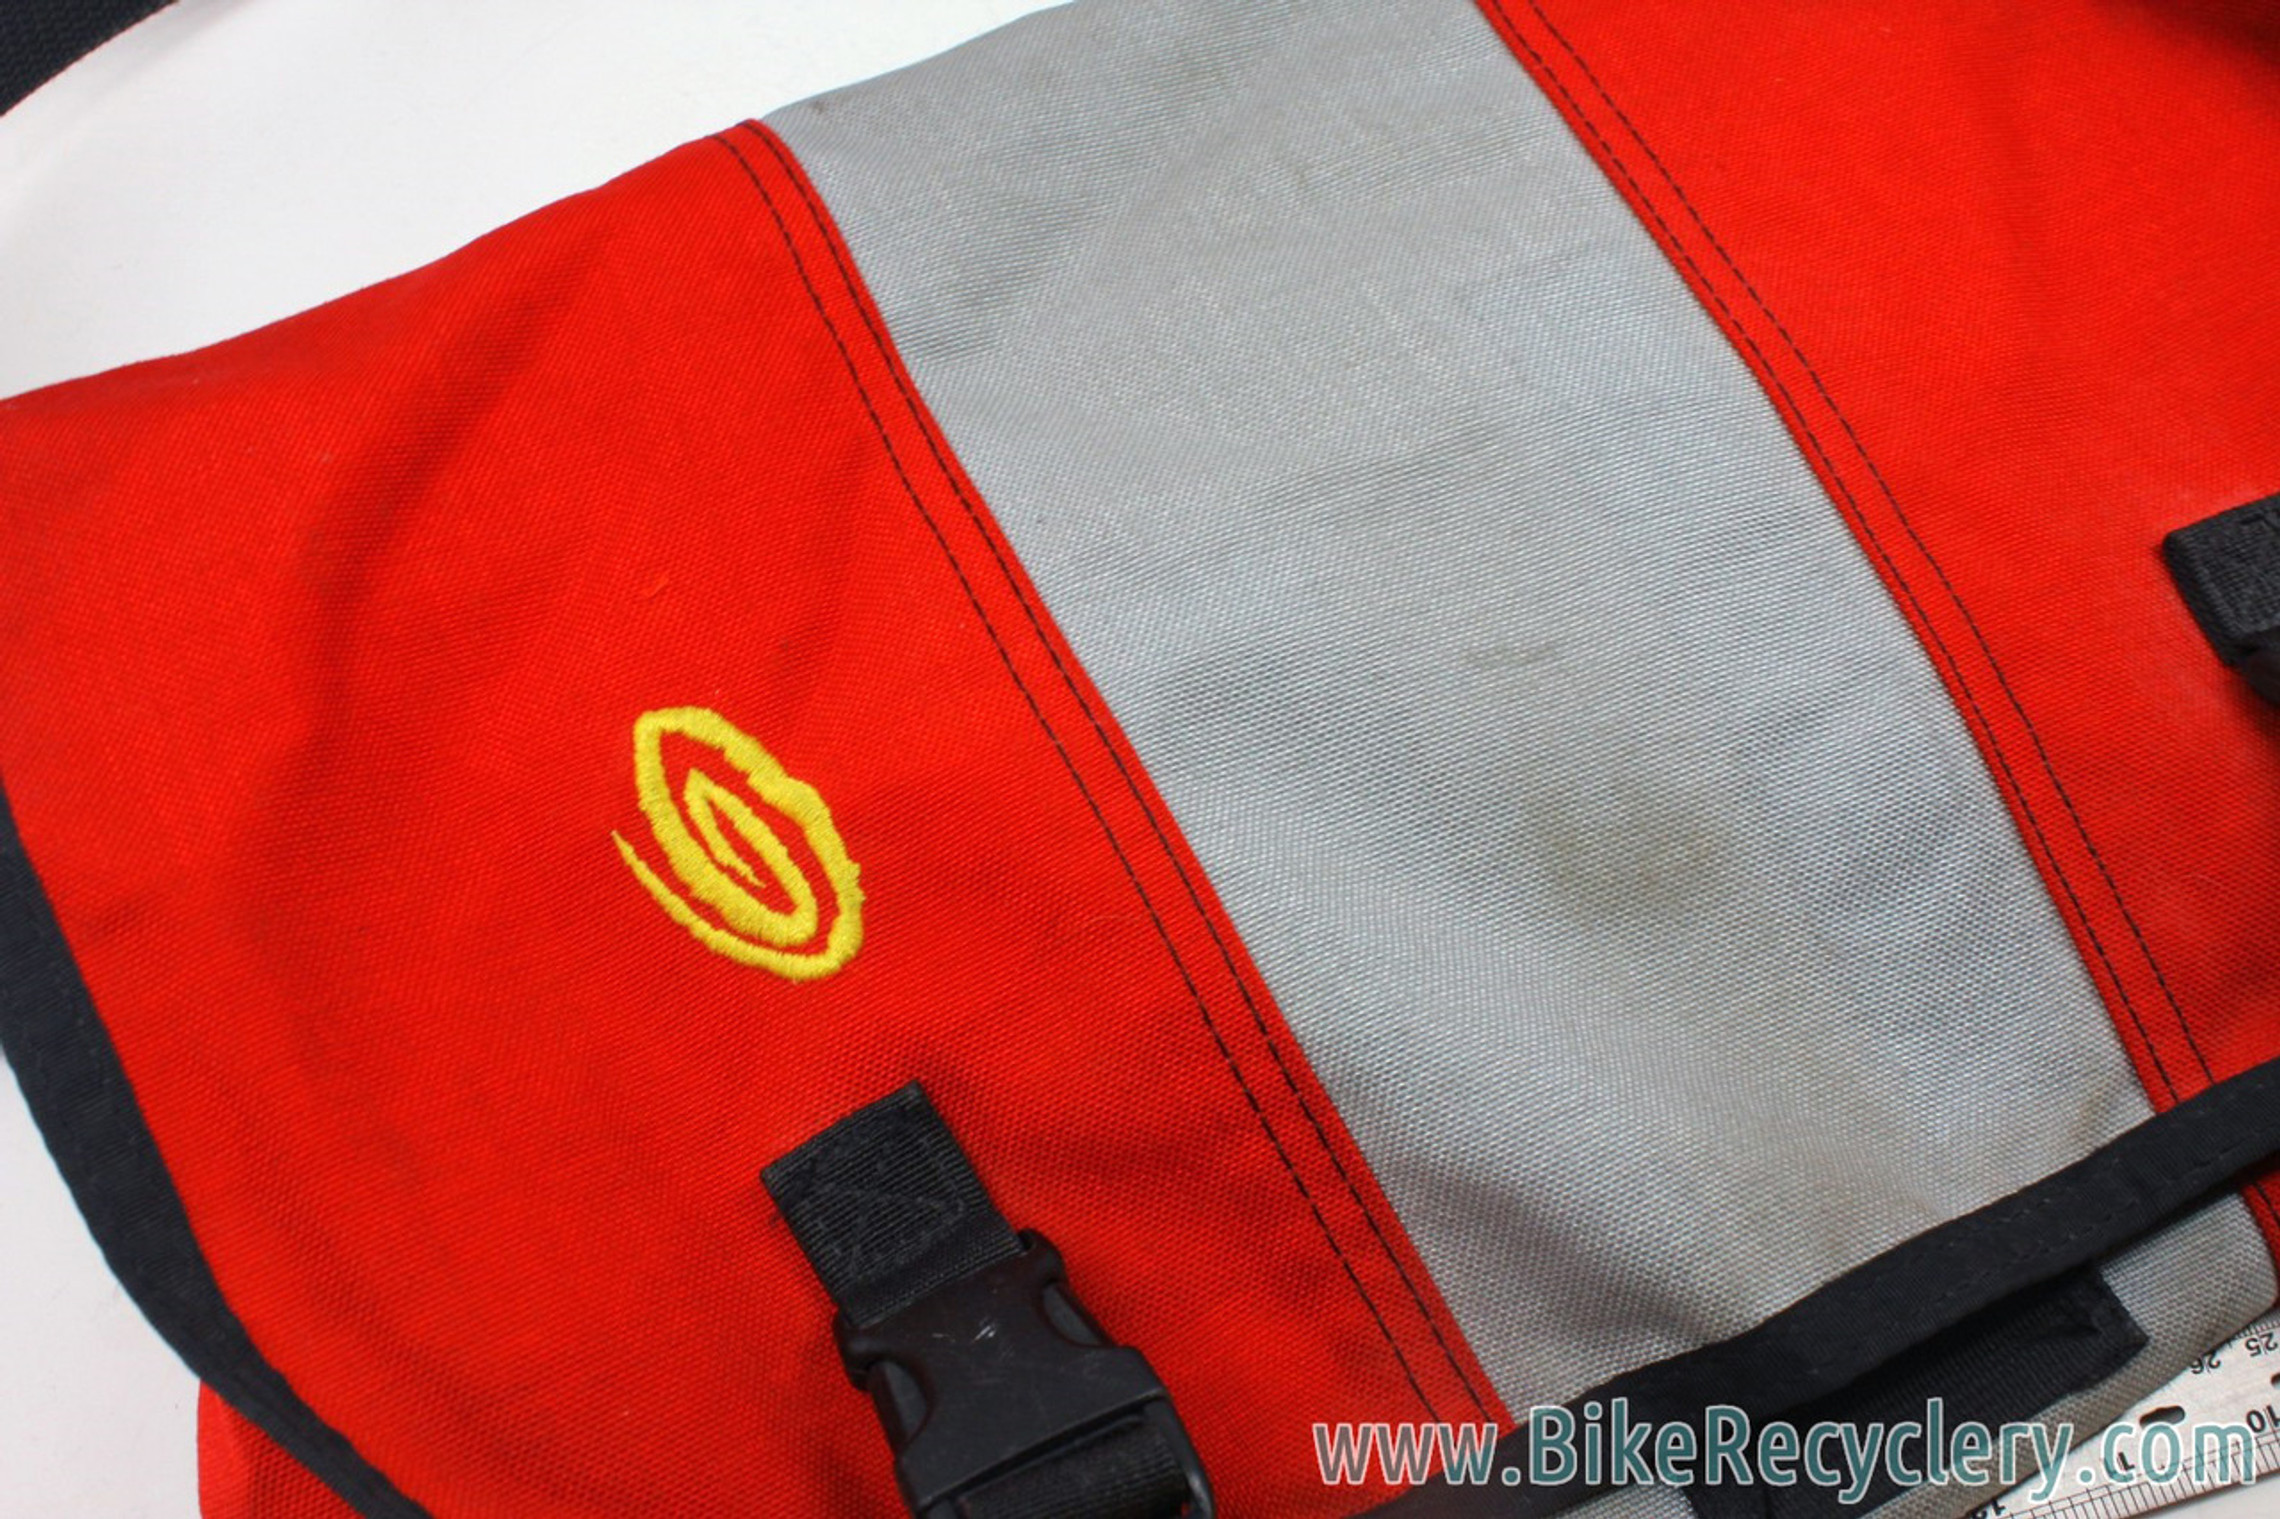 Timbuk2 Messenger Bag Red And Gray